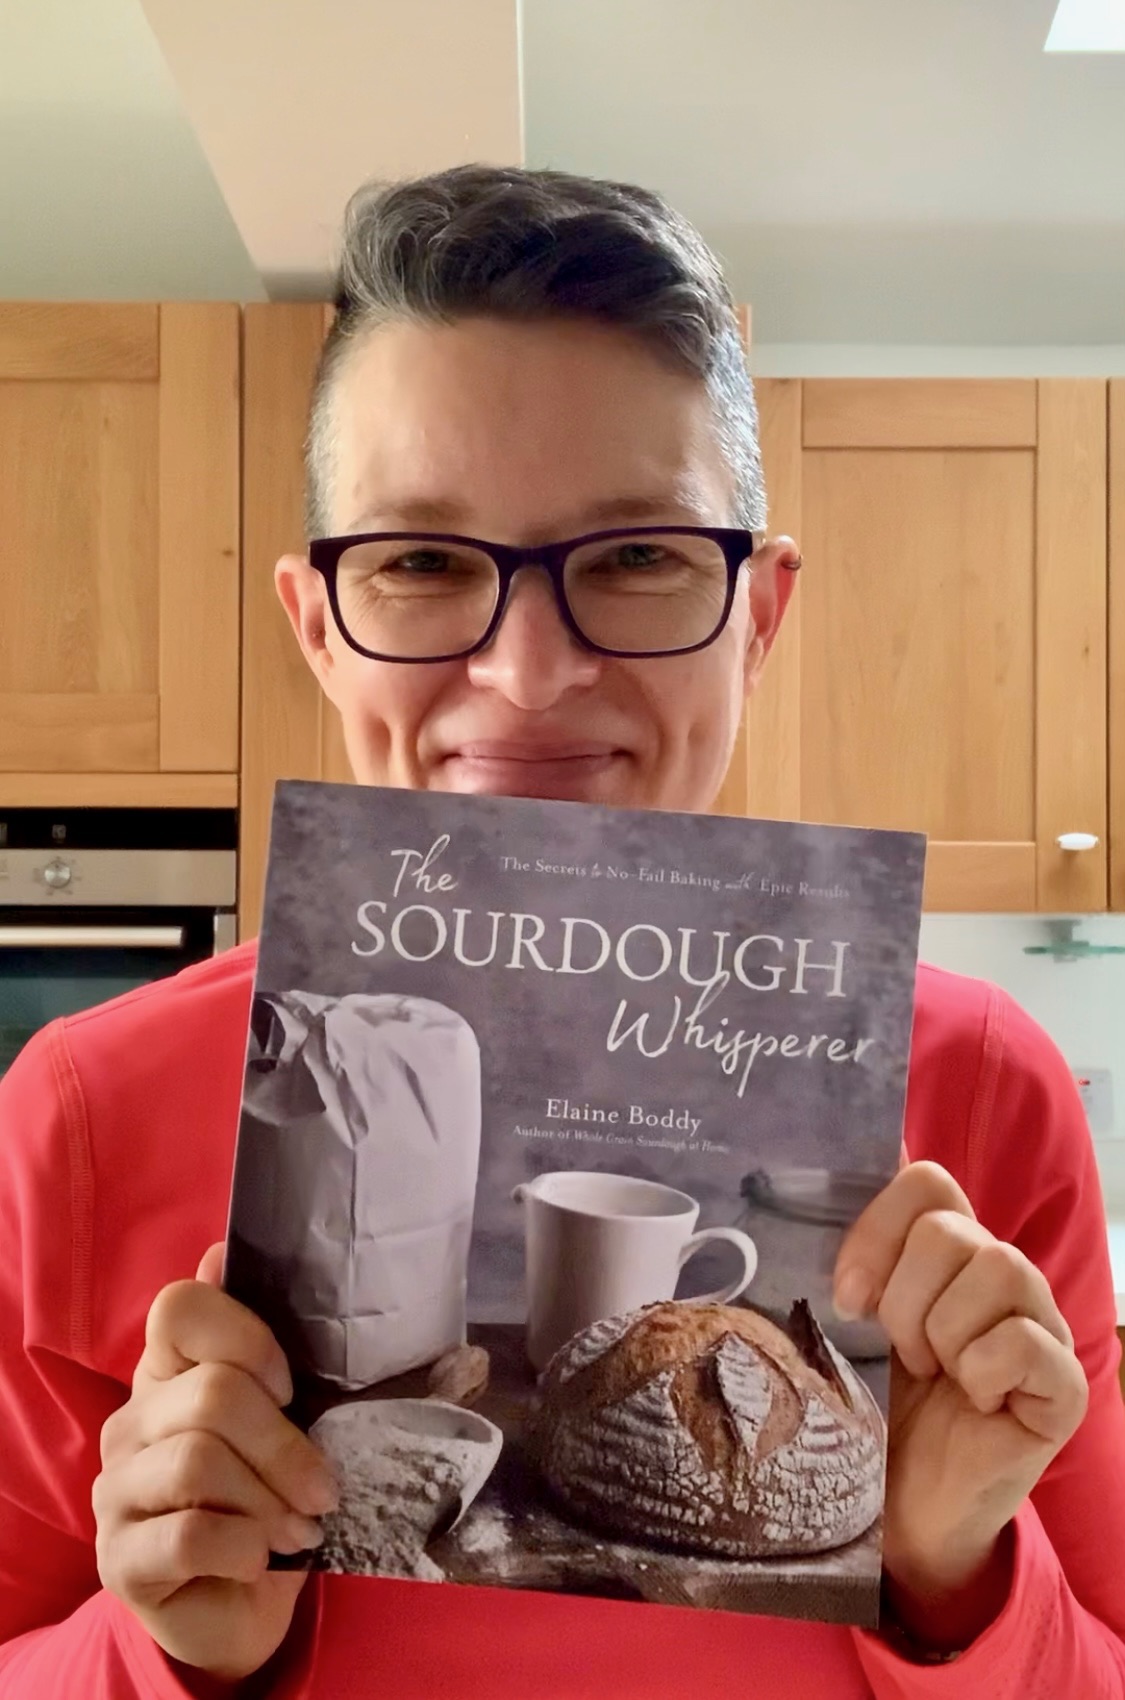 Sourdough Bread Recipe Book